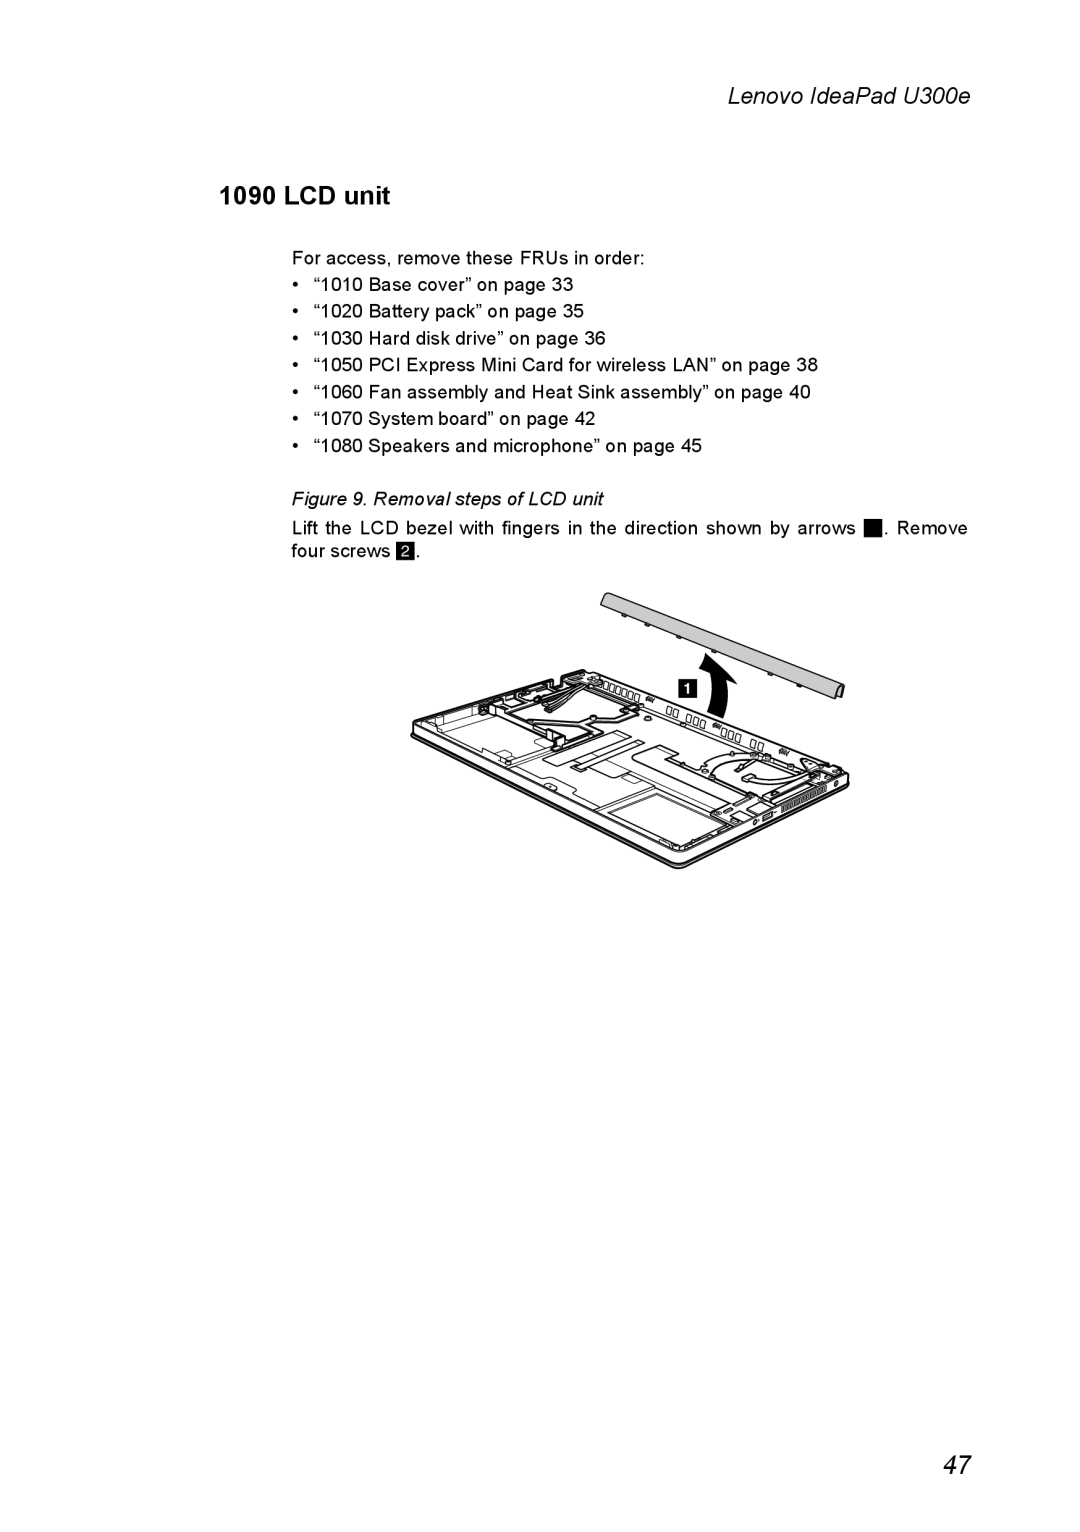 Lenovo U300E manual Removal steps of LCD unit, Lenovo IdeaPad U300e 